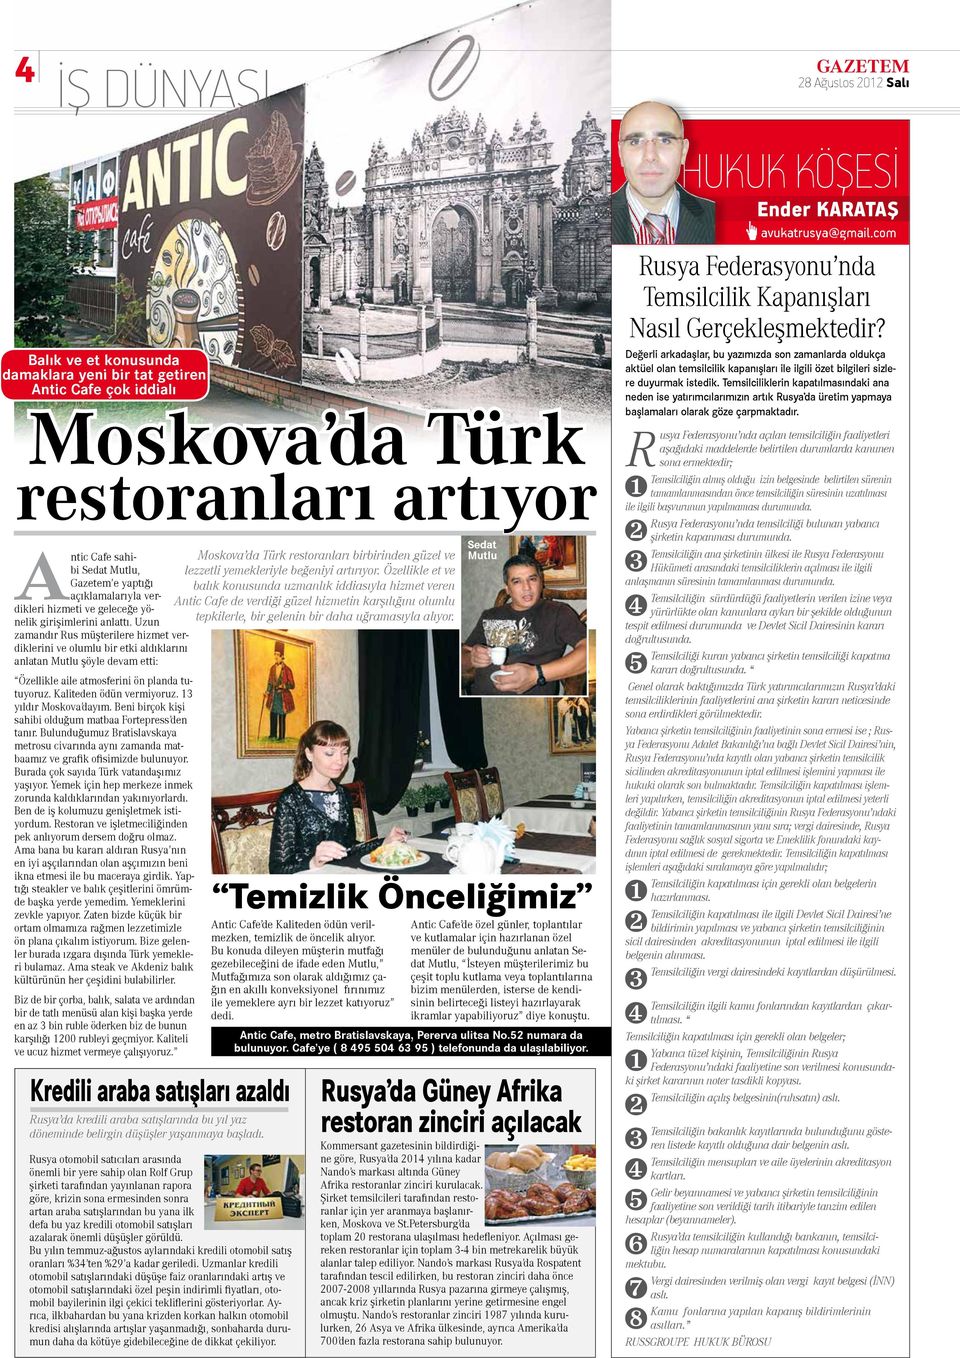 Özellikle et ve Moskova da Türk restoranları birbirinden güzel ve Gazetem e yaptığı balık konusunda uzmanlık iddiasıyla hizmet veren açıklamalarıyla verdikleri hizmeti ve geleceğe yö- Antic Cafe de